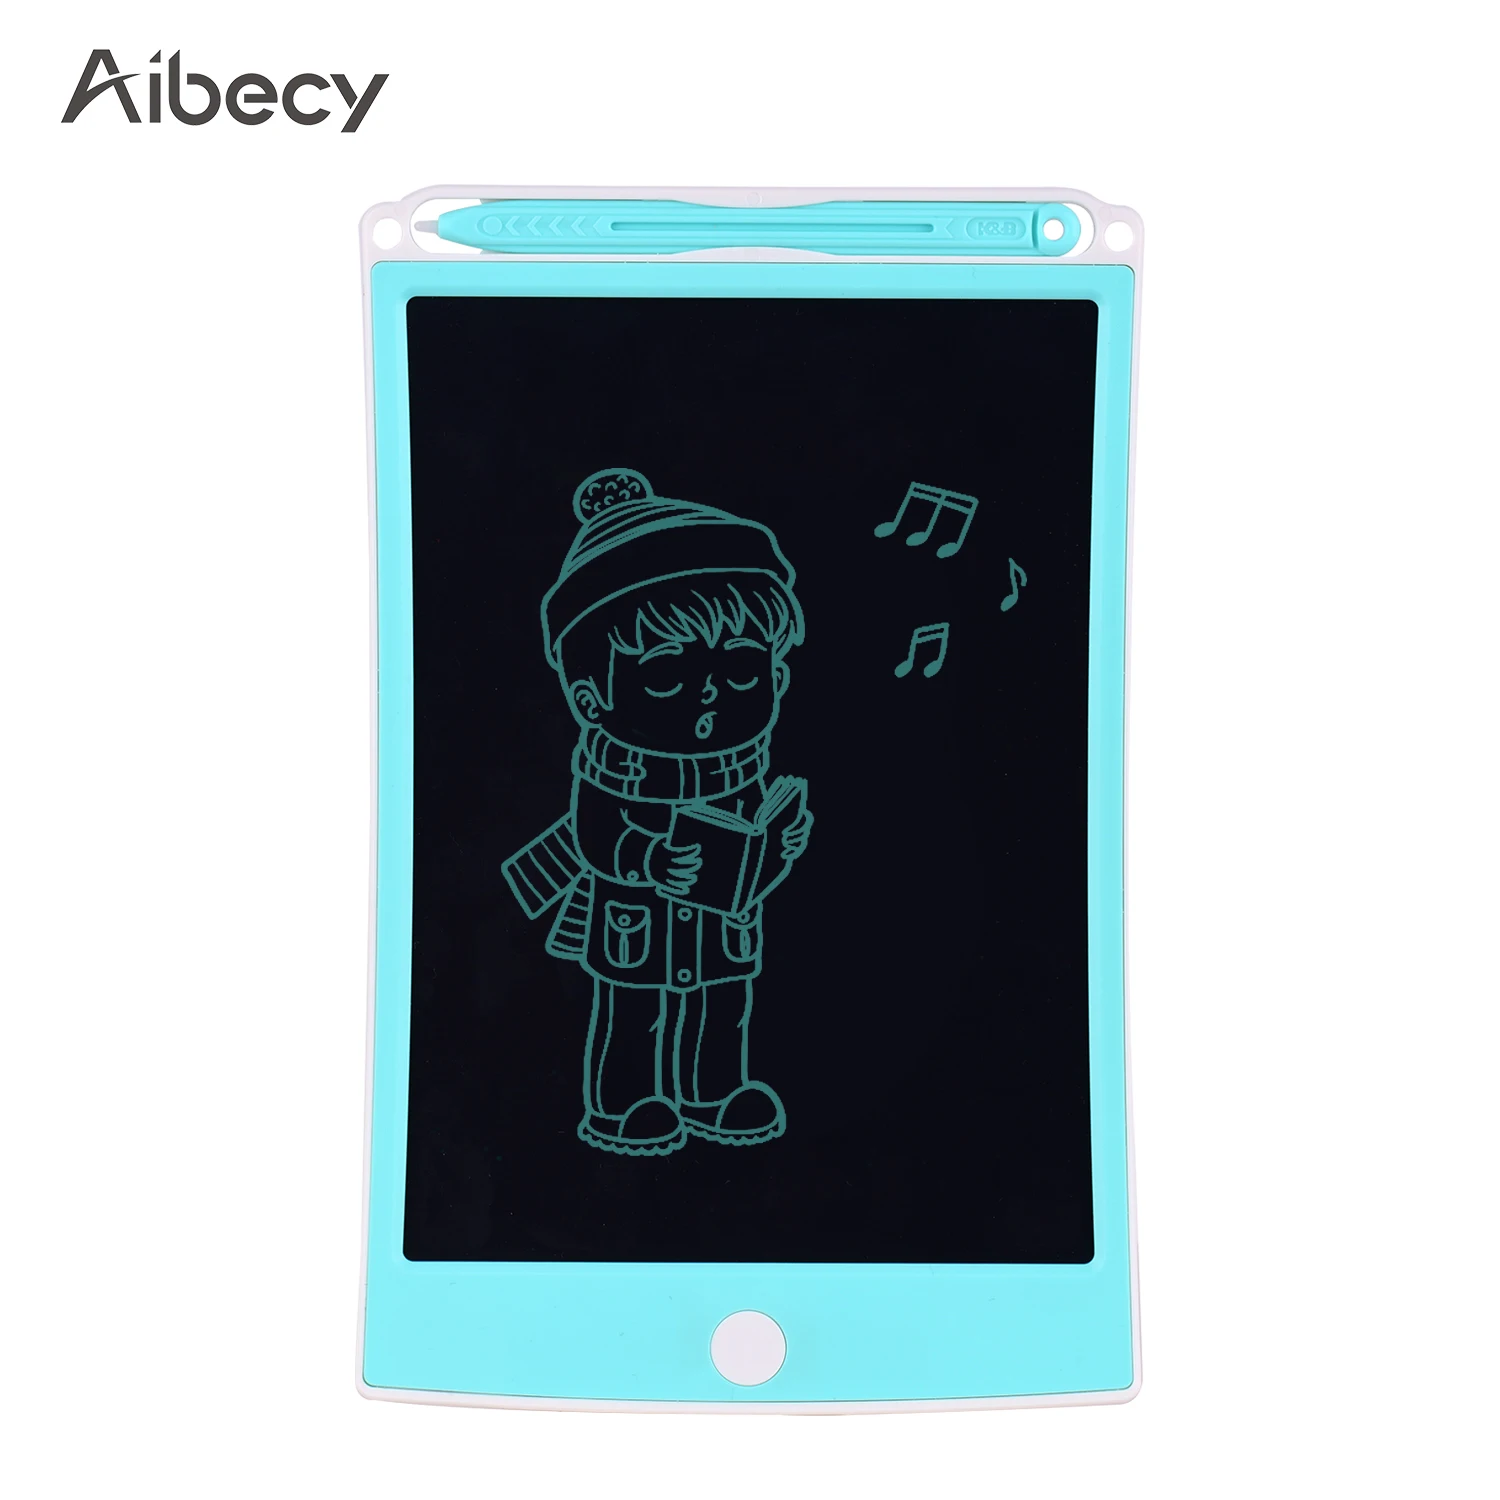 

Планшет для рисования Aibecy с ЖК-дисплеем 8,5 дюйма, Электронная доска для письма, доска для рисования с кнопкой блокировки, однощелевая, для шк...